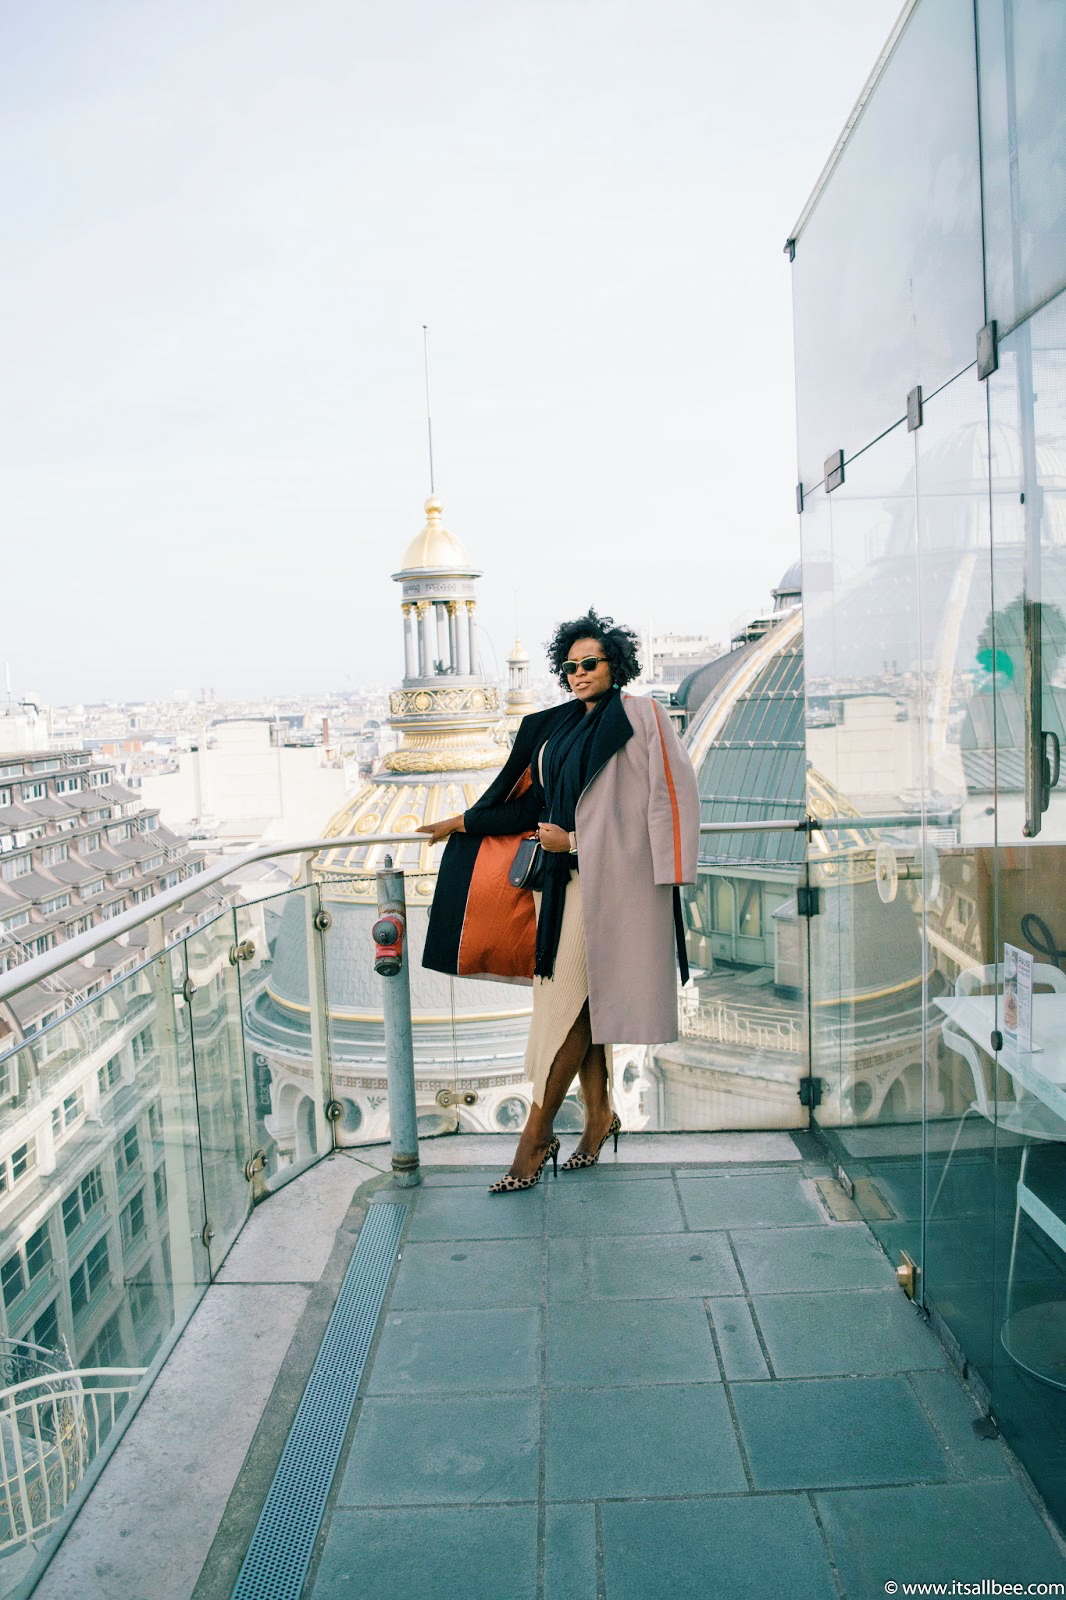 Deli-Cieux Printemps Rooftop Cafe | Best Kept Secret In Paris